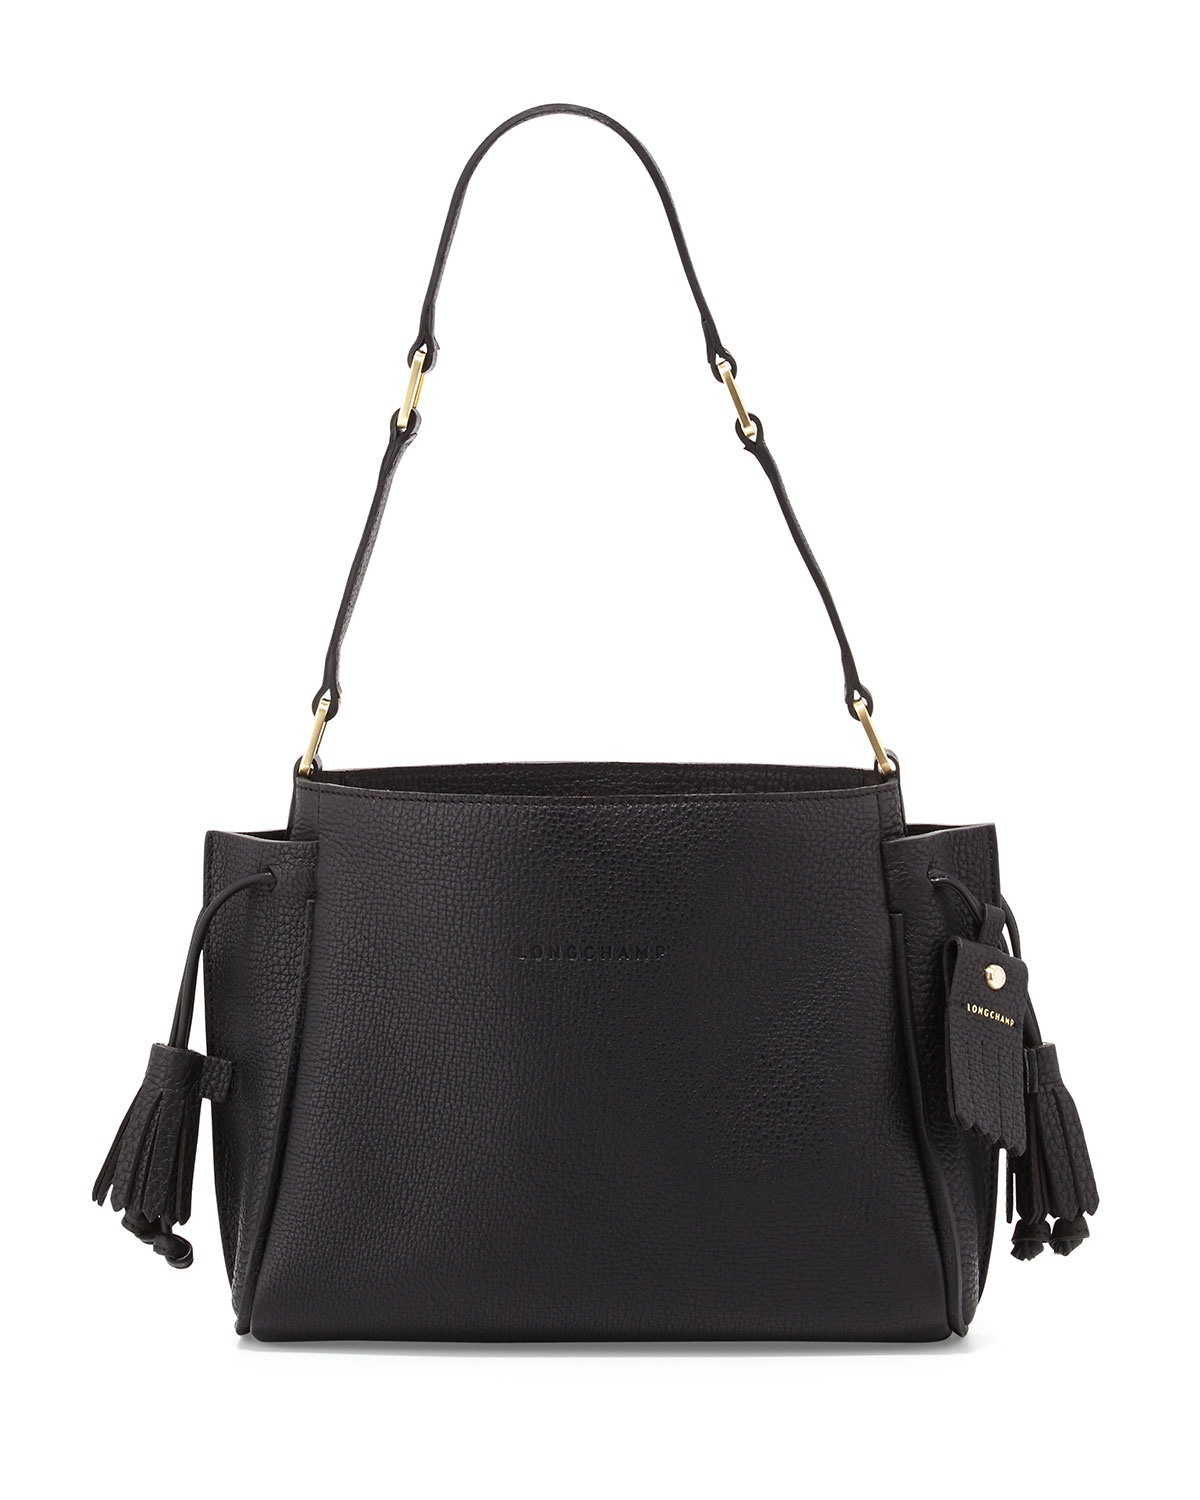 Lyst - Longchamp Penelope Small Shoulder Bag in Black